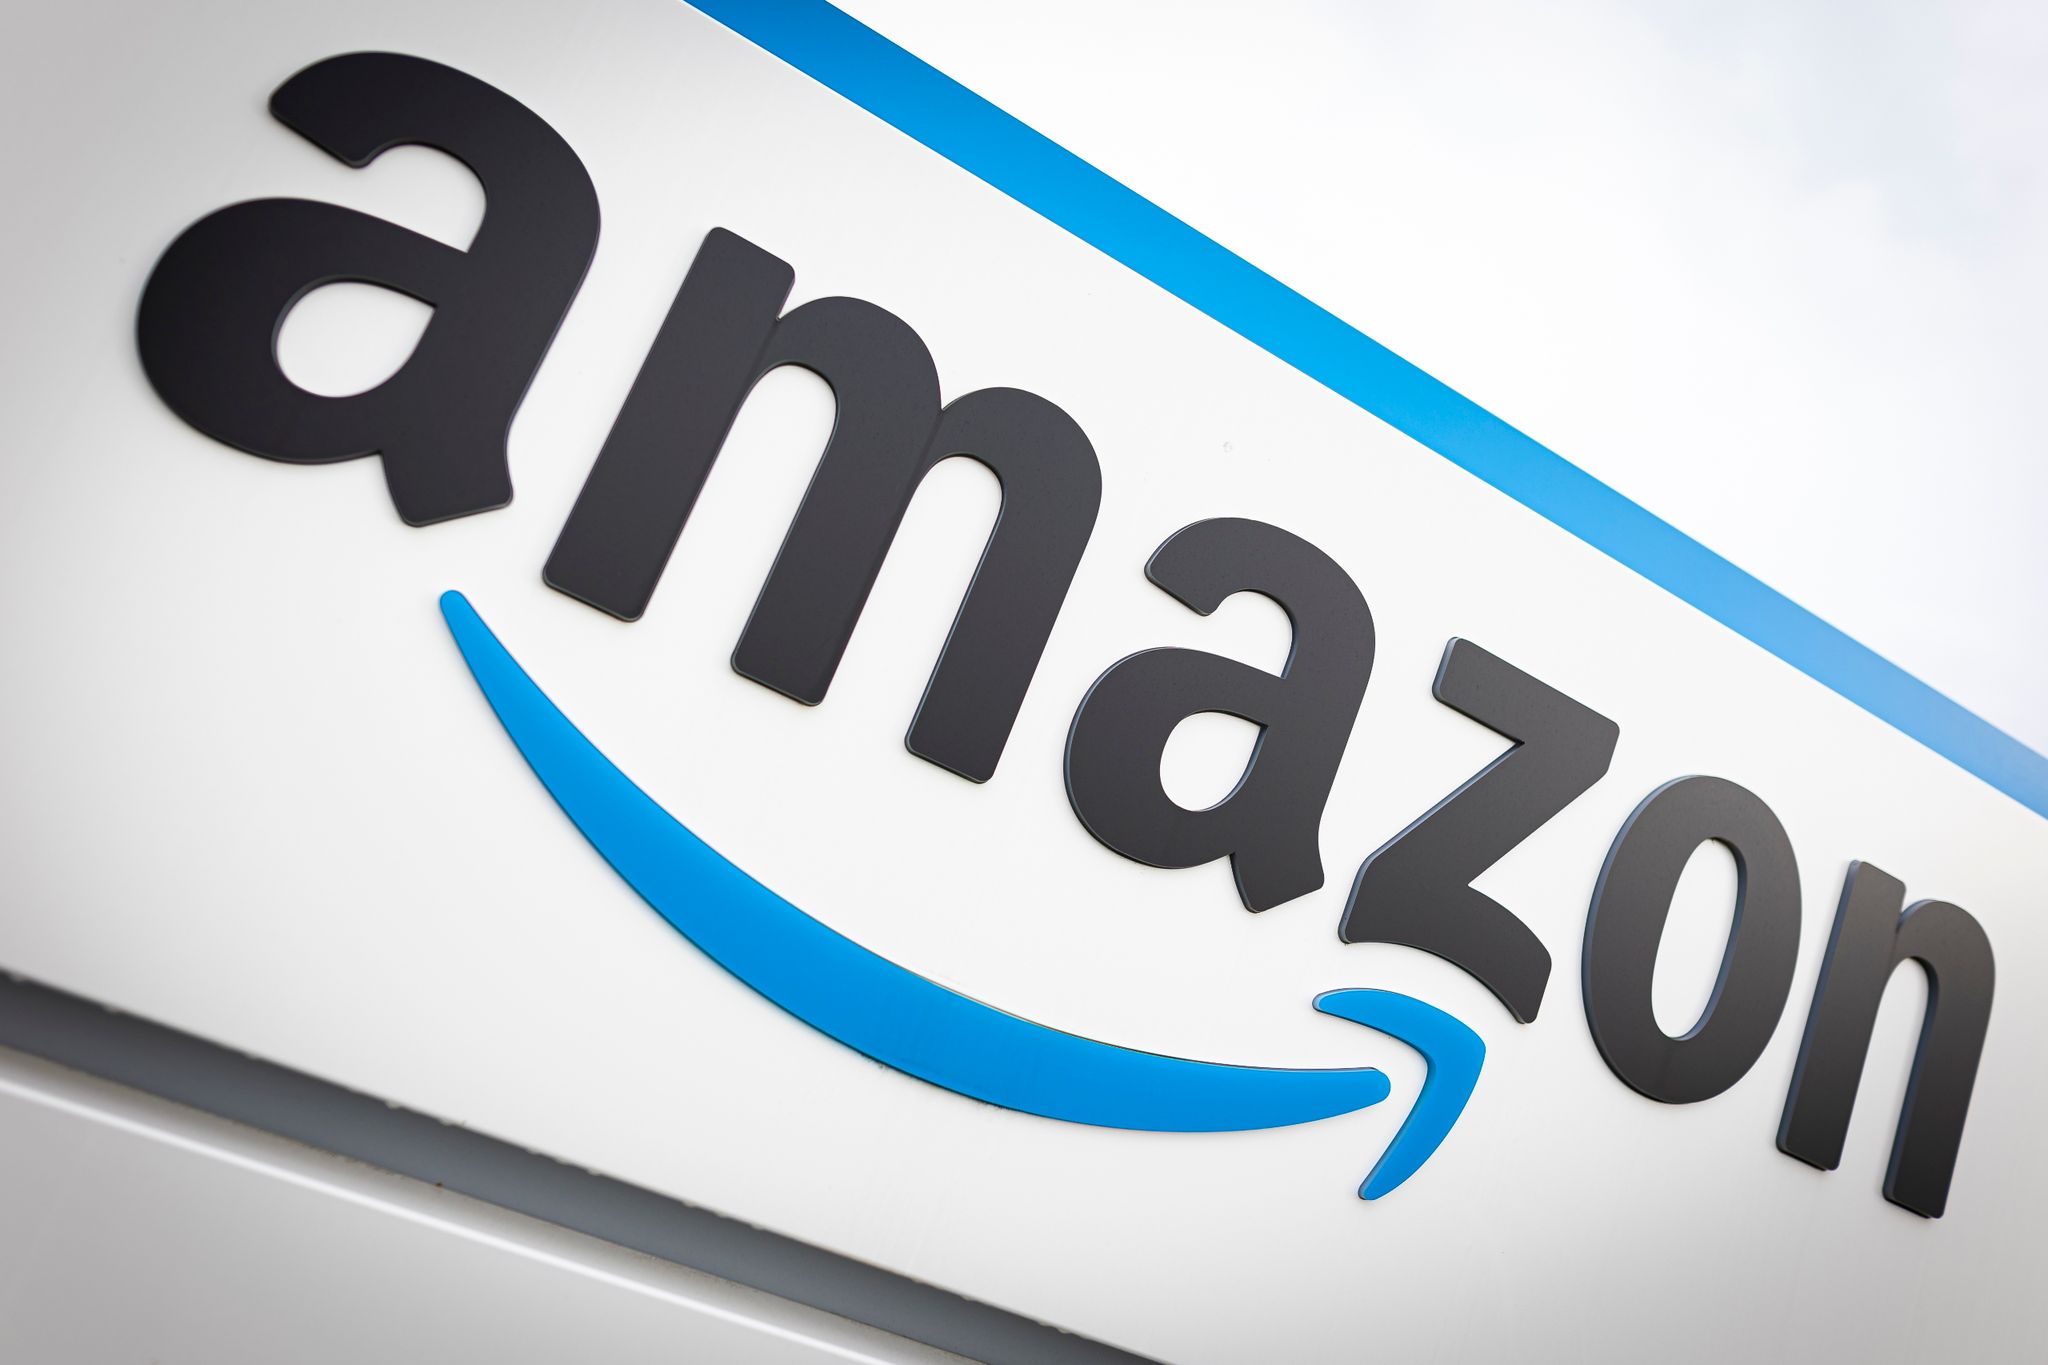 Amazon-Gewinn bricht trotz deutlicher Umsatzsteigerung ein